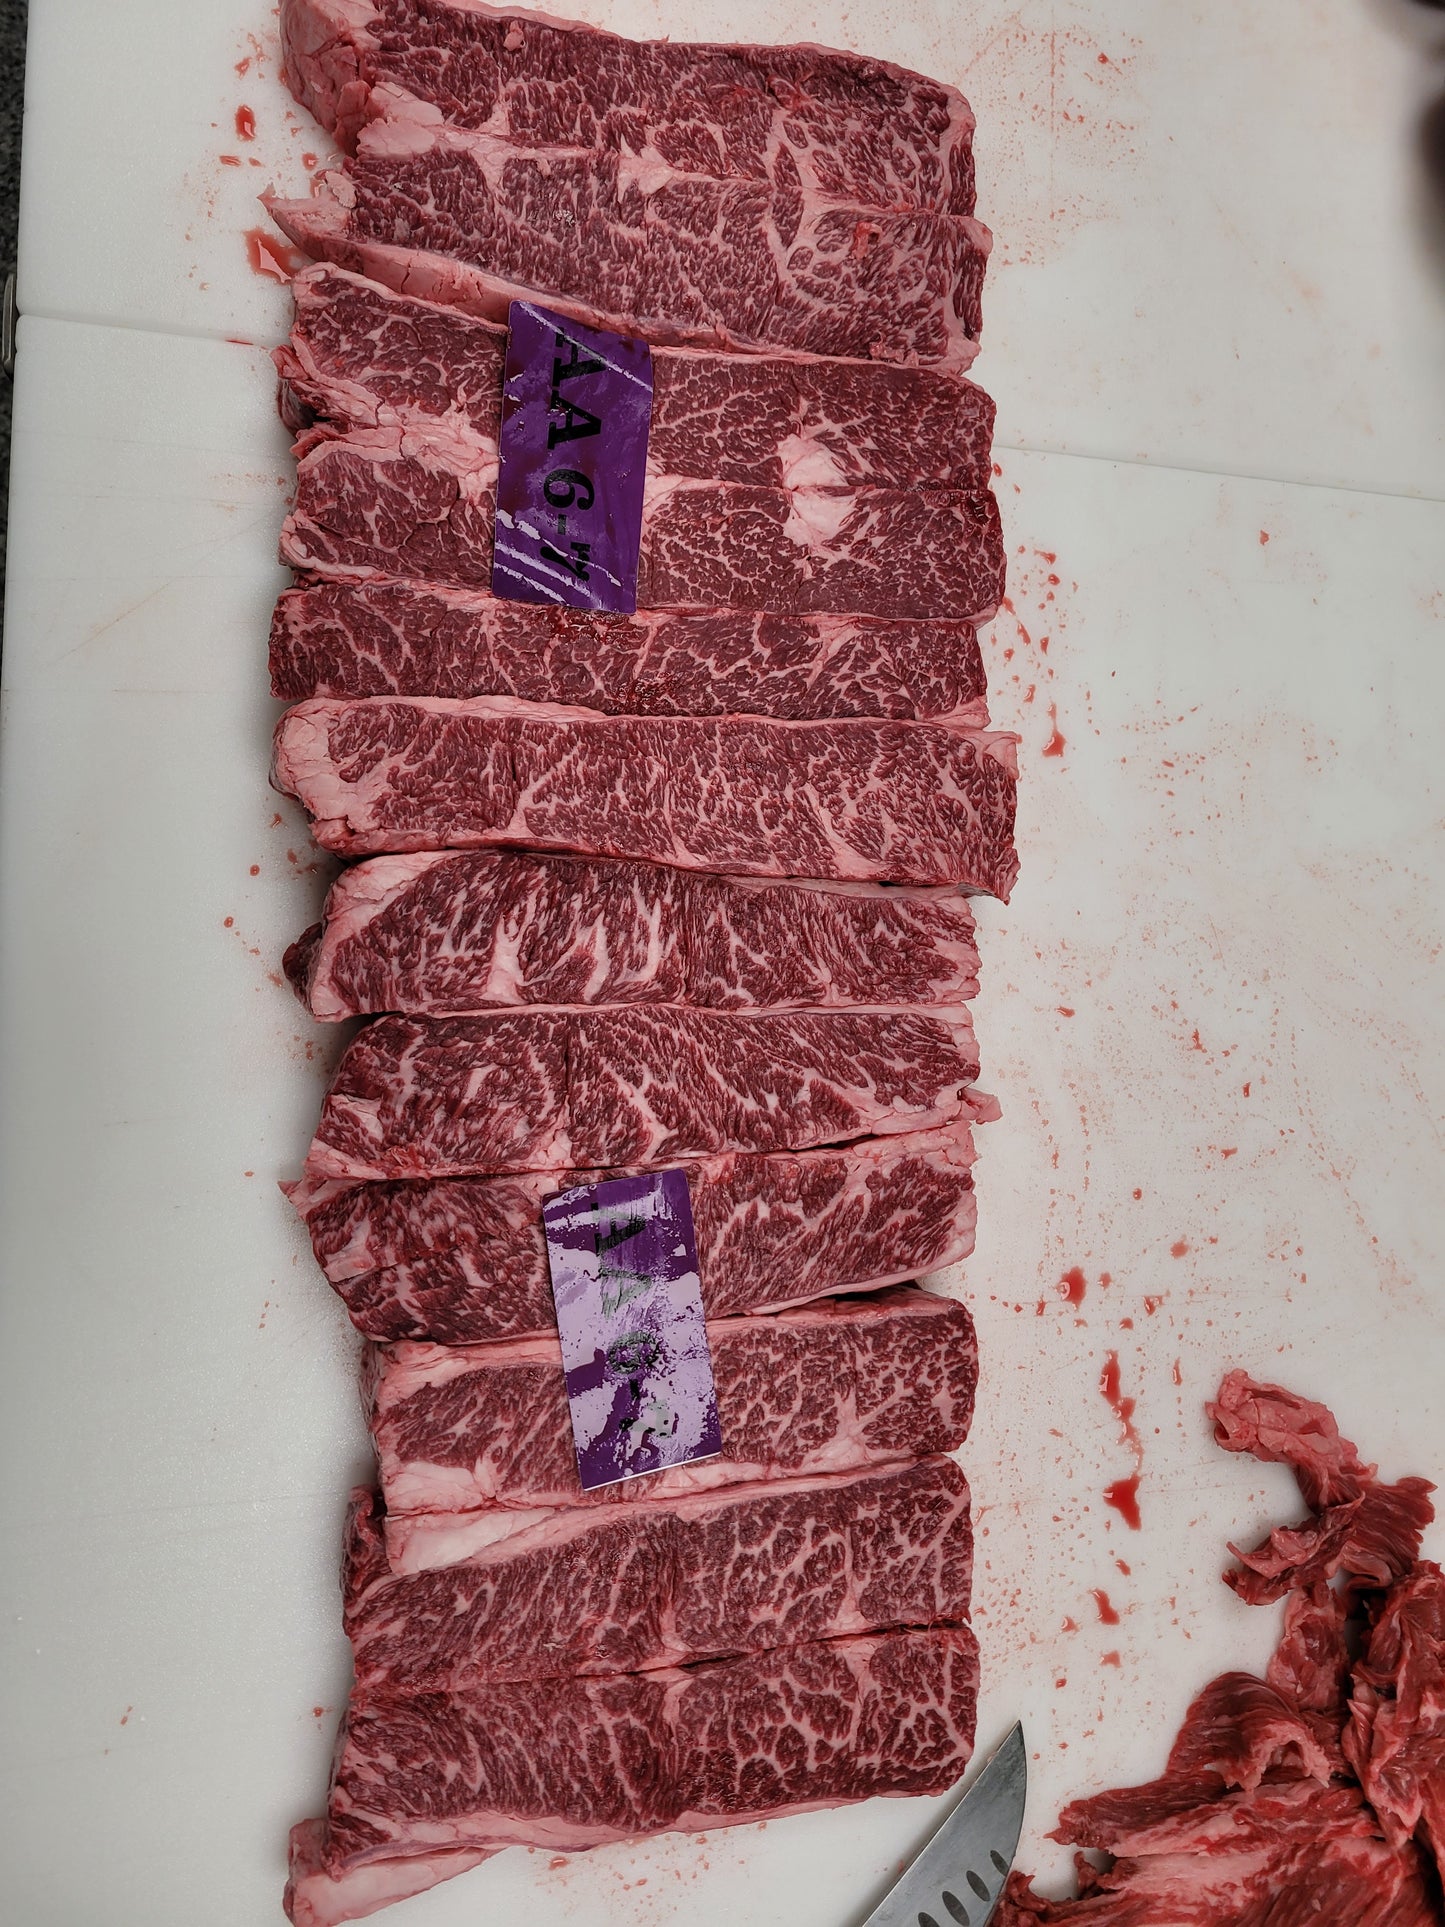 Aussie 9+ Denver Steak